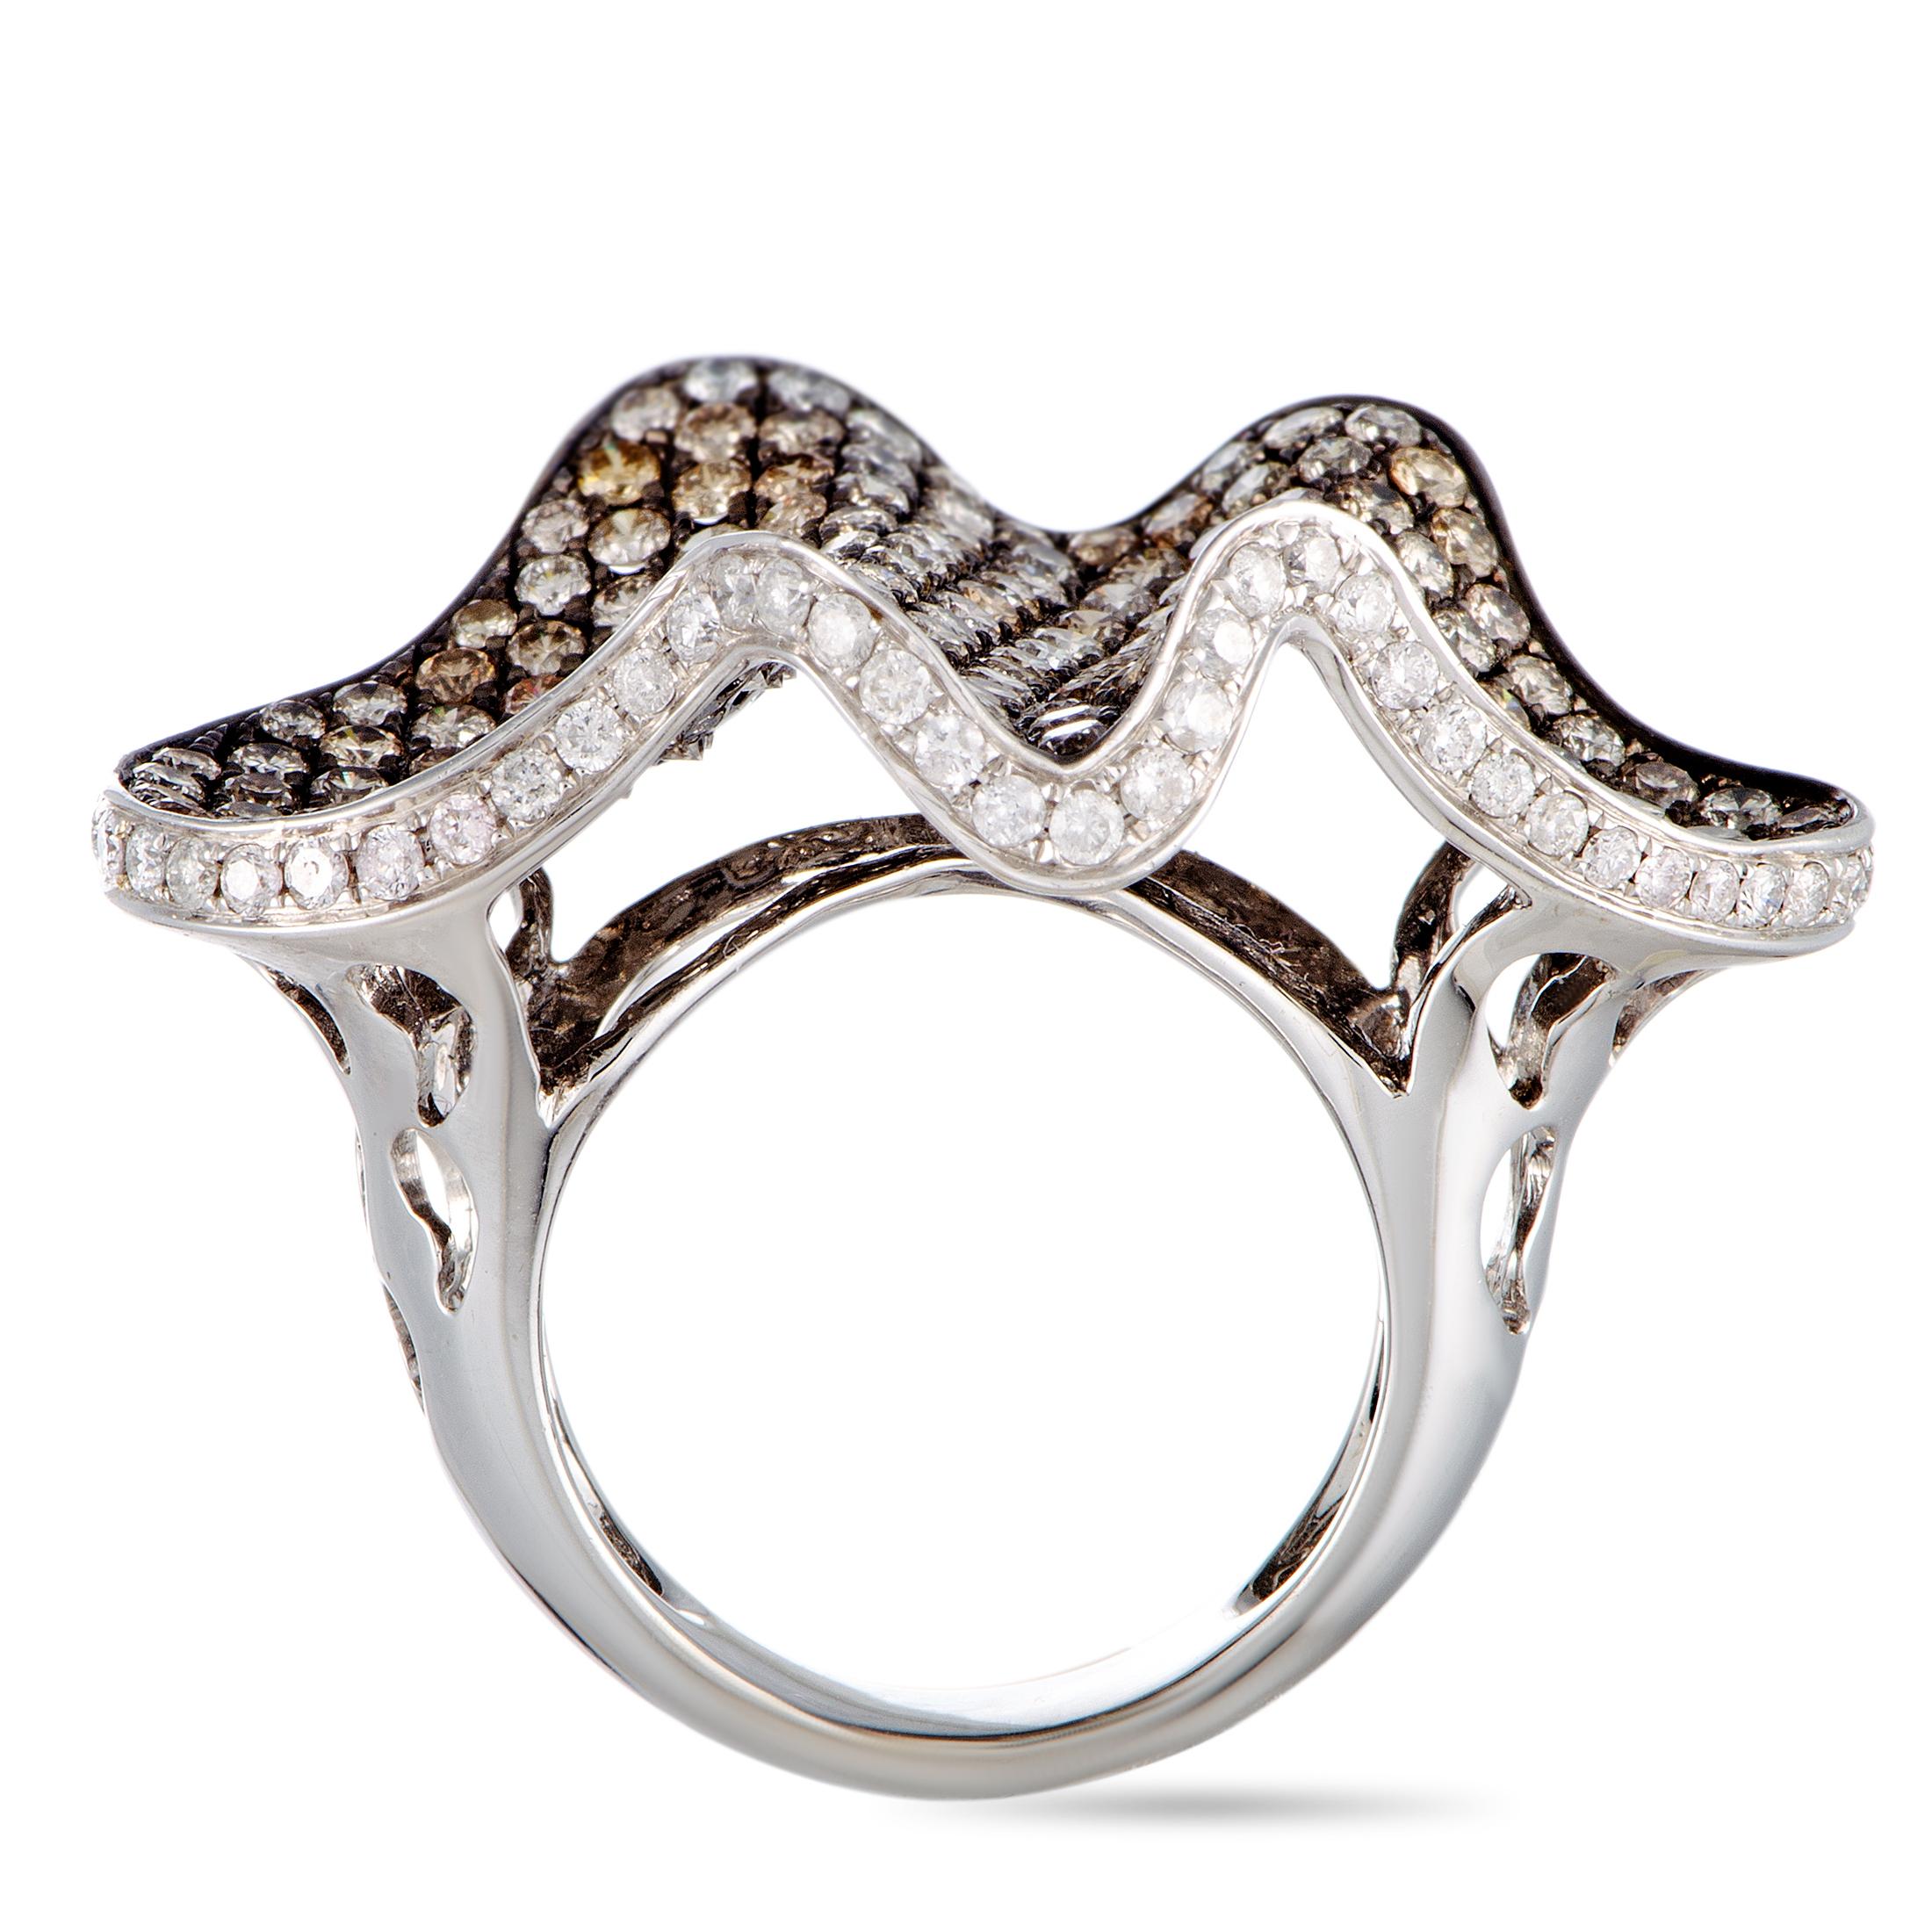 Dieser Ring besteht aus 18 Karat Weißgold und Diamanten von insgesamt 6,50 Karat. Der Ring wiegt 16,8 Gramm, hat eine Banddicke von 5 mm und eine Höhe von 10 mm, während die Oberseite 25 x 37 mm misst.

Angeboten in Nachlass Zustand, enthält dieses